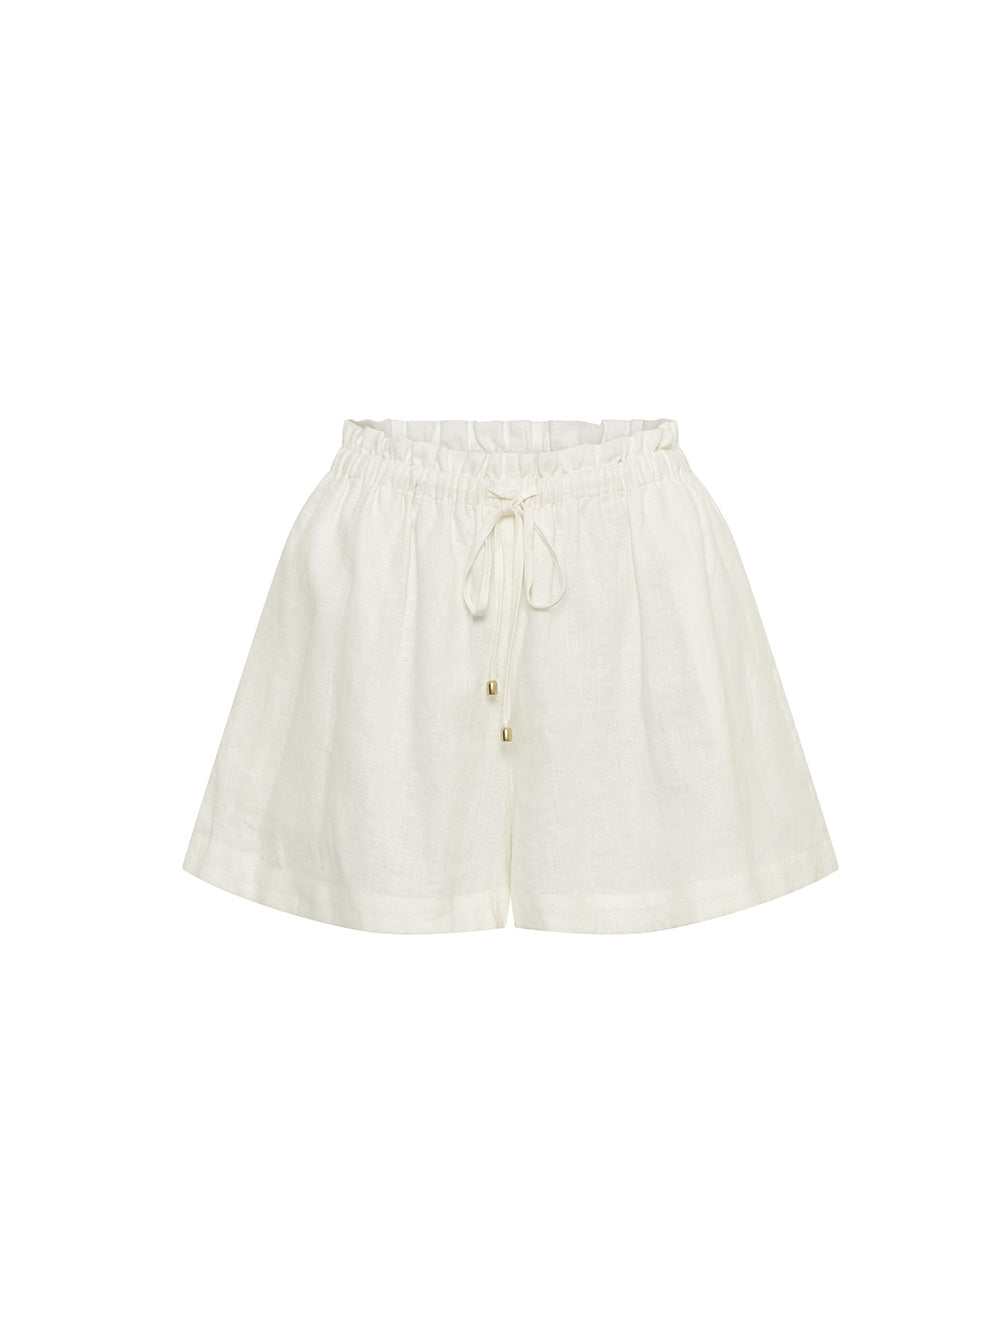 Jacana Short KIVARI | White linen shorts